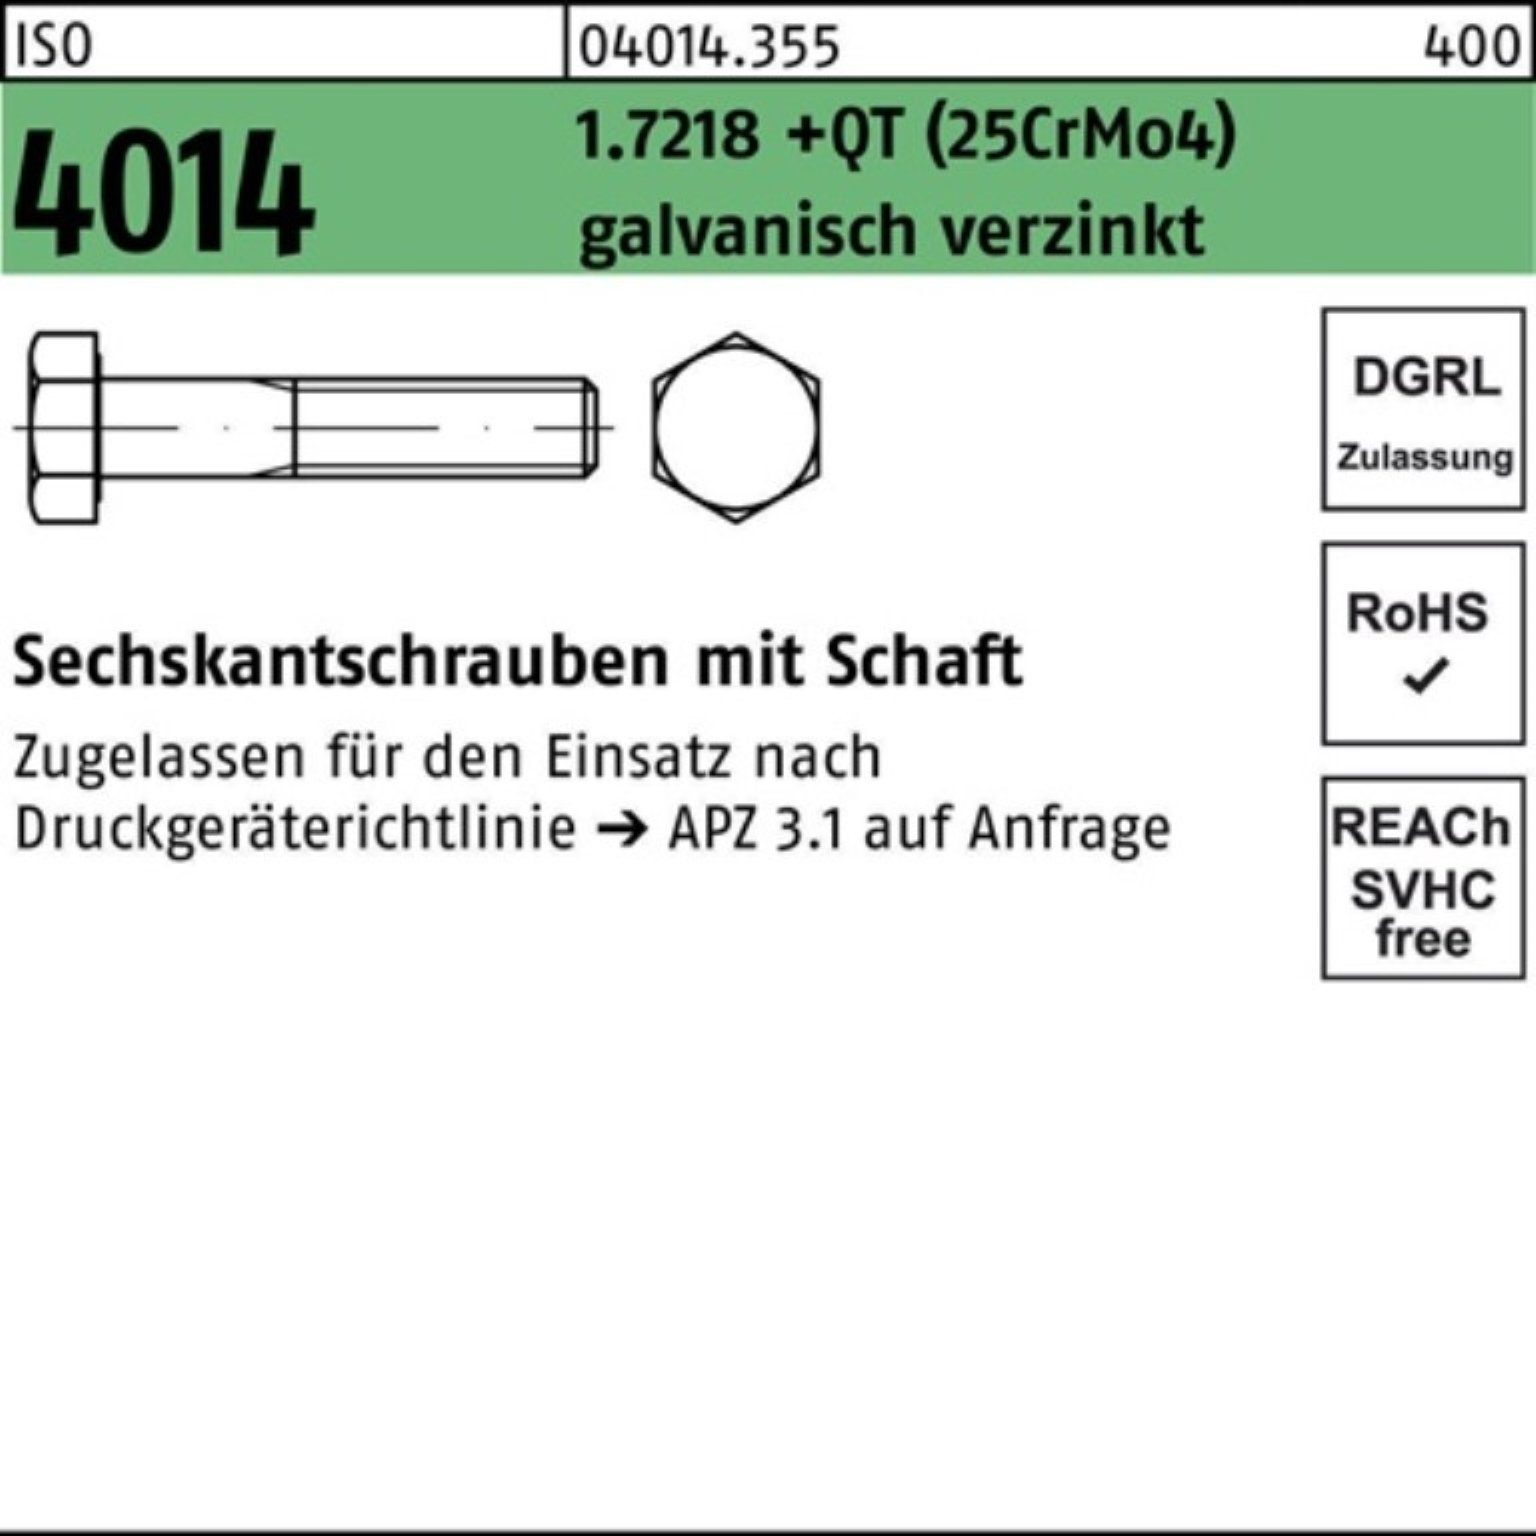 Bufab M20x85 100er Pack 4014 Schaft +QT ISO (25CrMo Sechskantschraube Sechskantschraube 1.7218